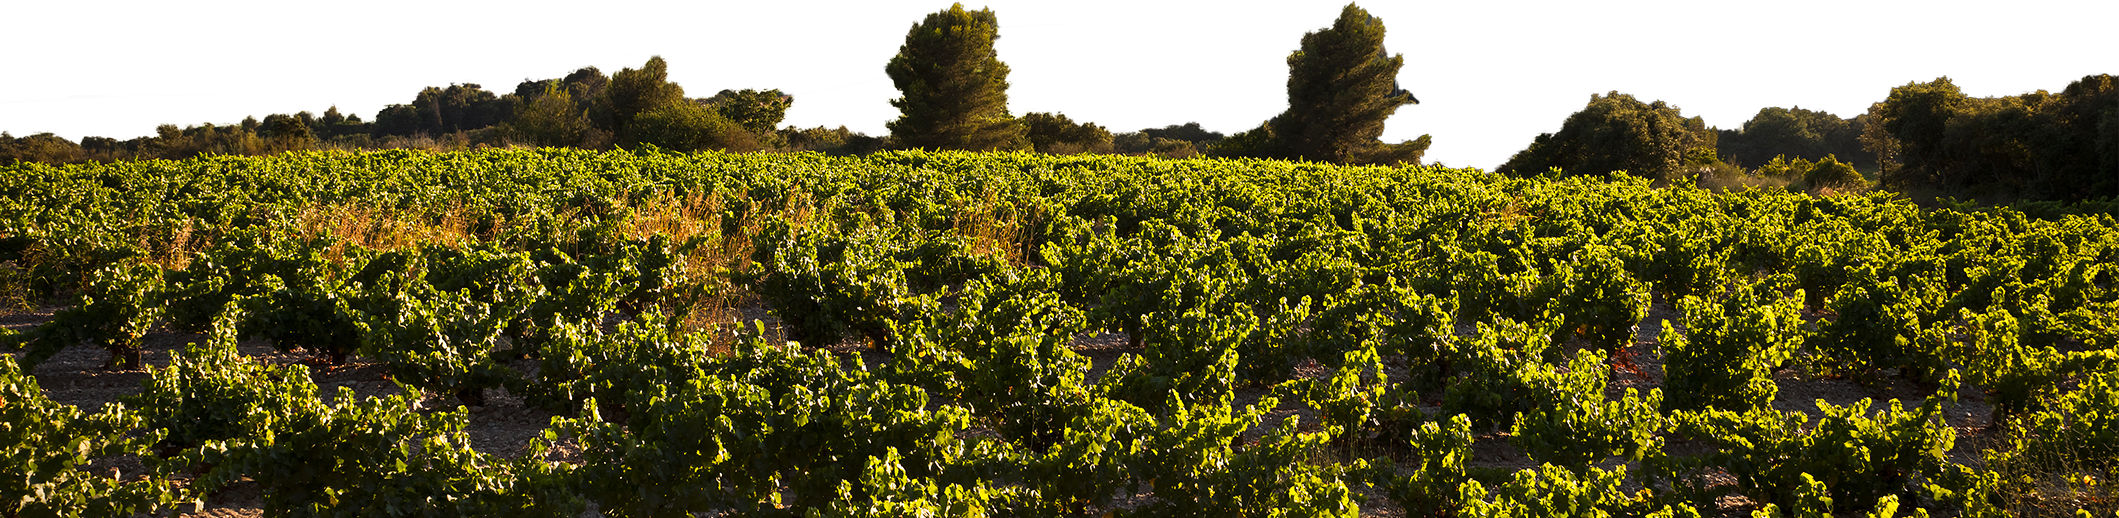 Le vignoble provençal